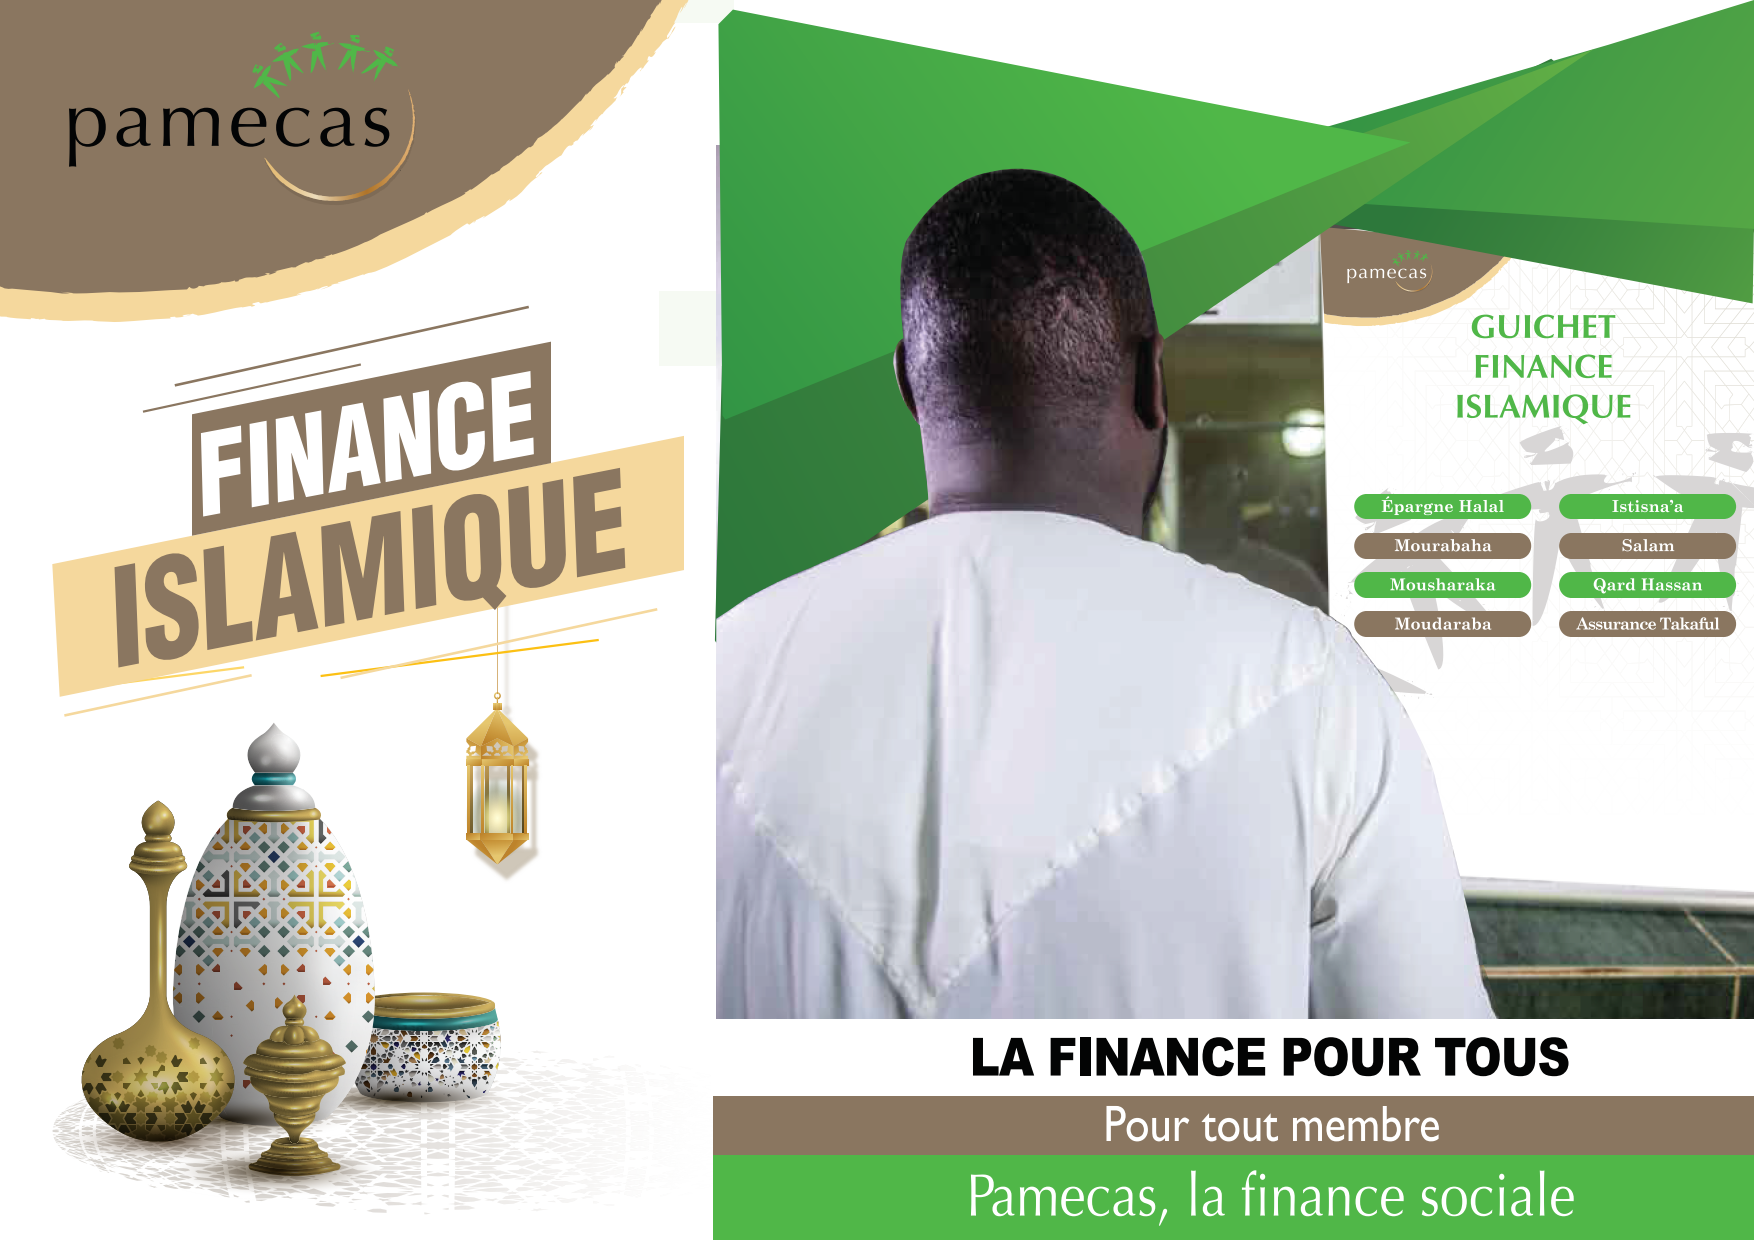 Finance islamique bis 2